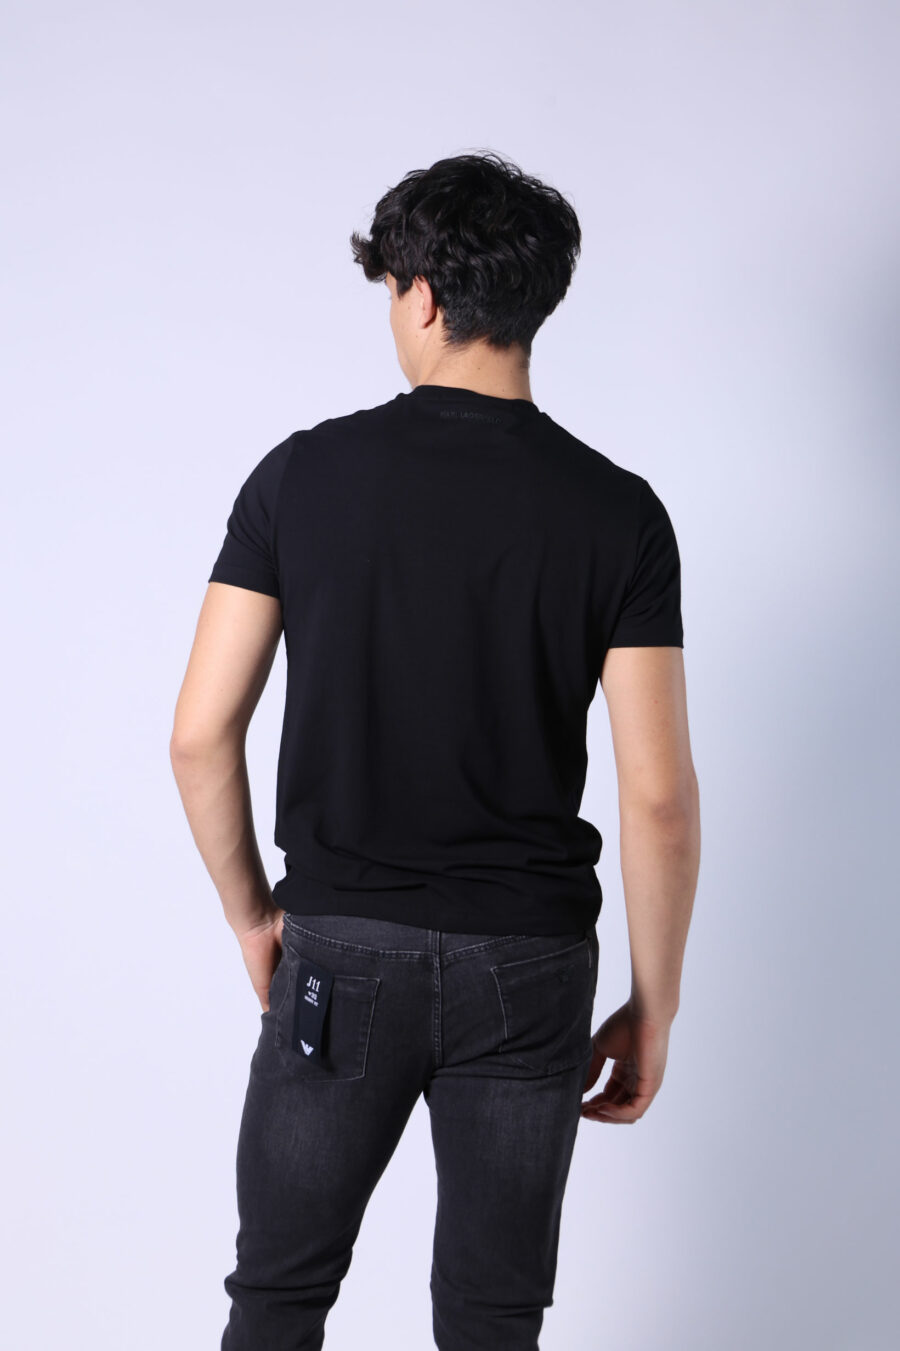 Black T-shirt with "ikonik" logo - Untitled Catalog 05722